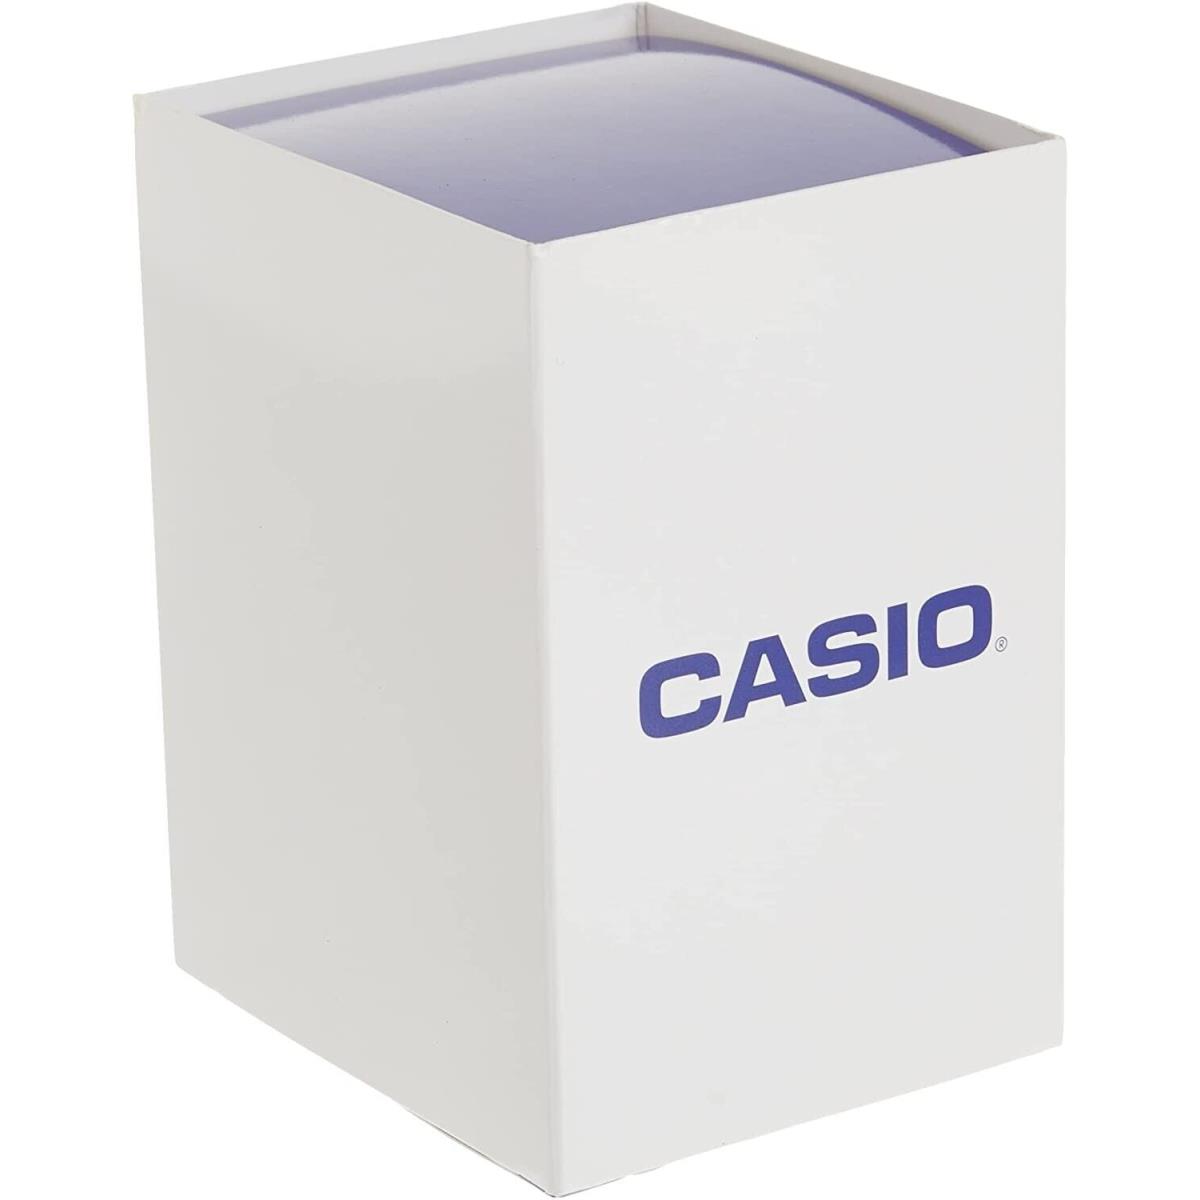 Casio AQ800E-7A Vintage Styled Analog/digital Silvertone Watch Alarm Chrono